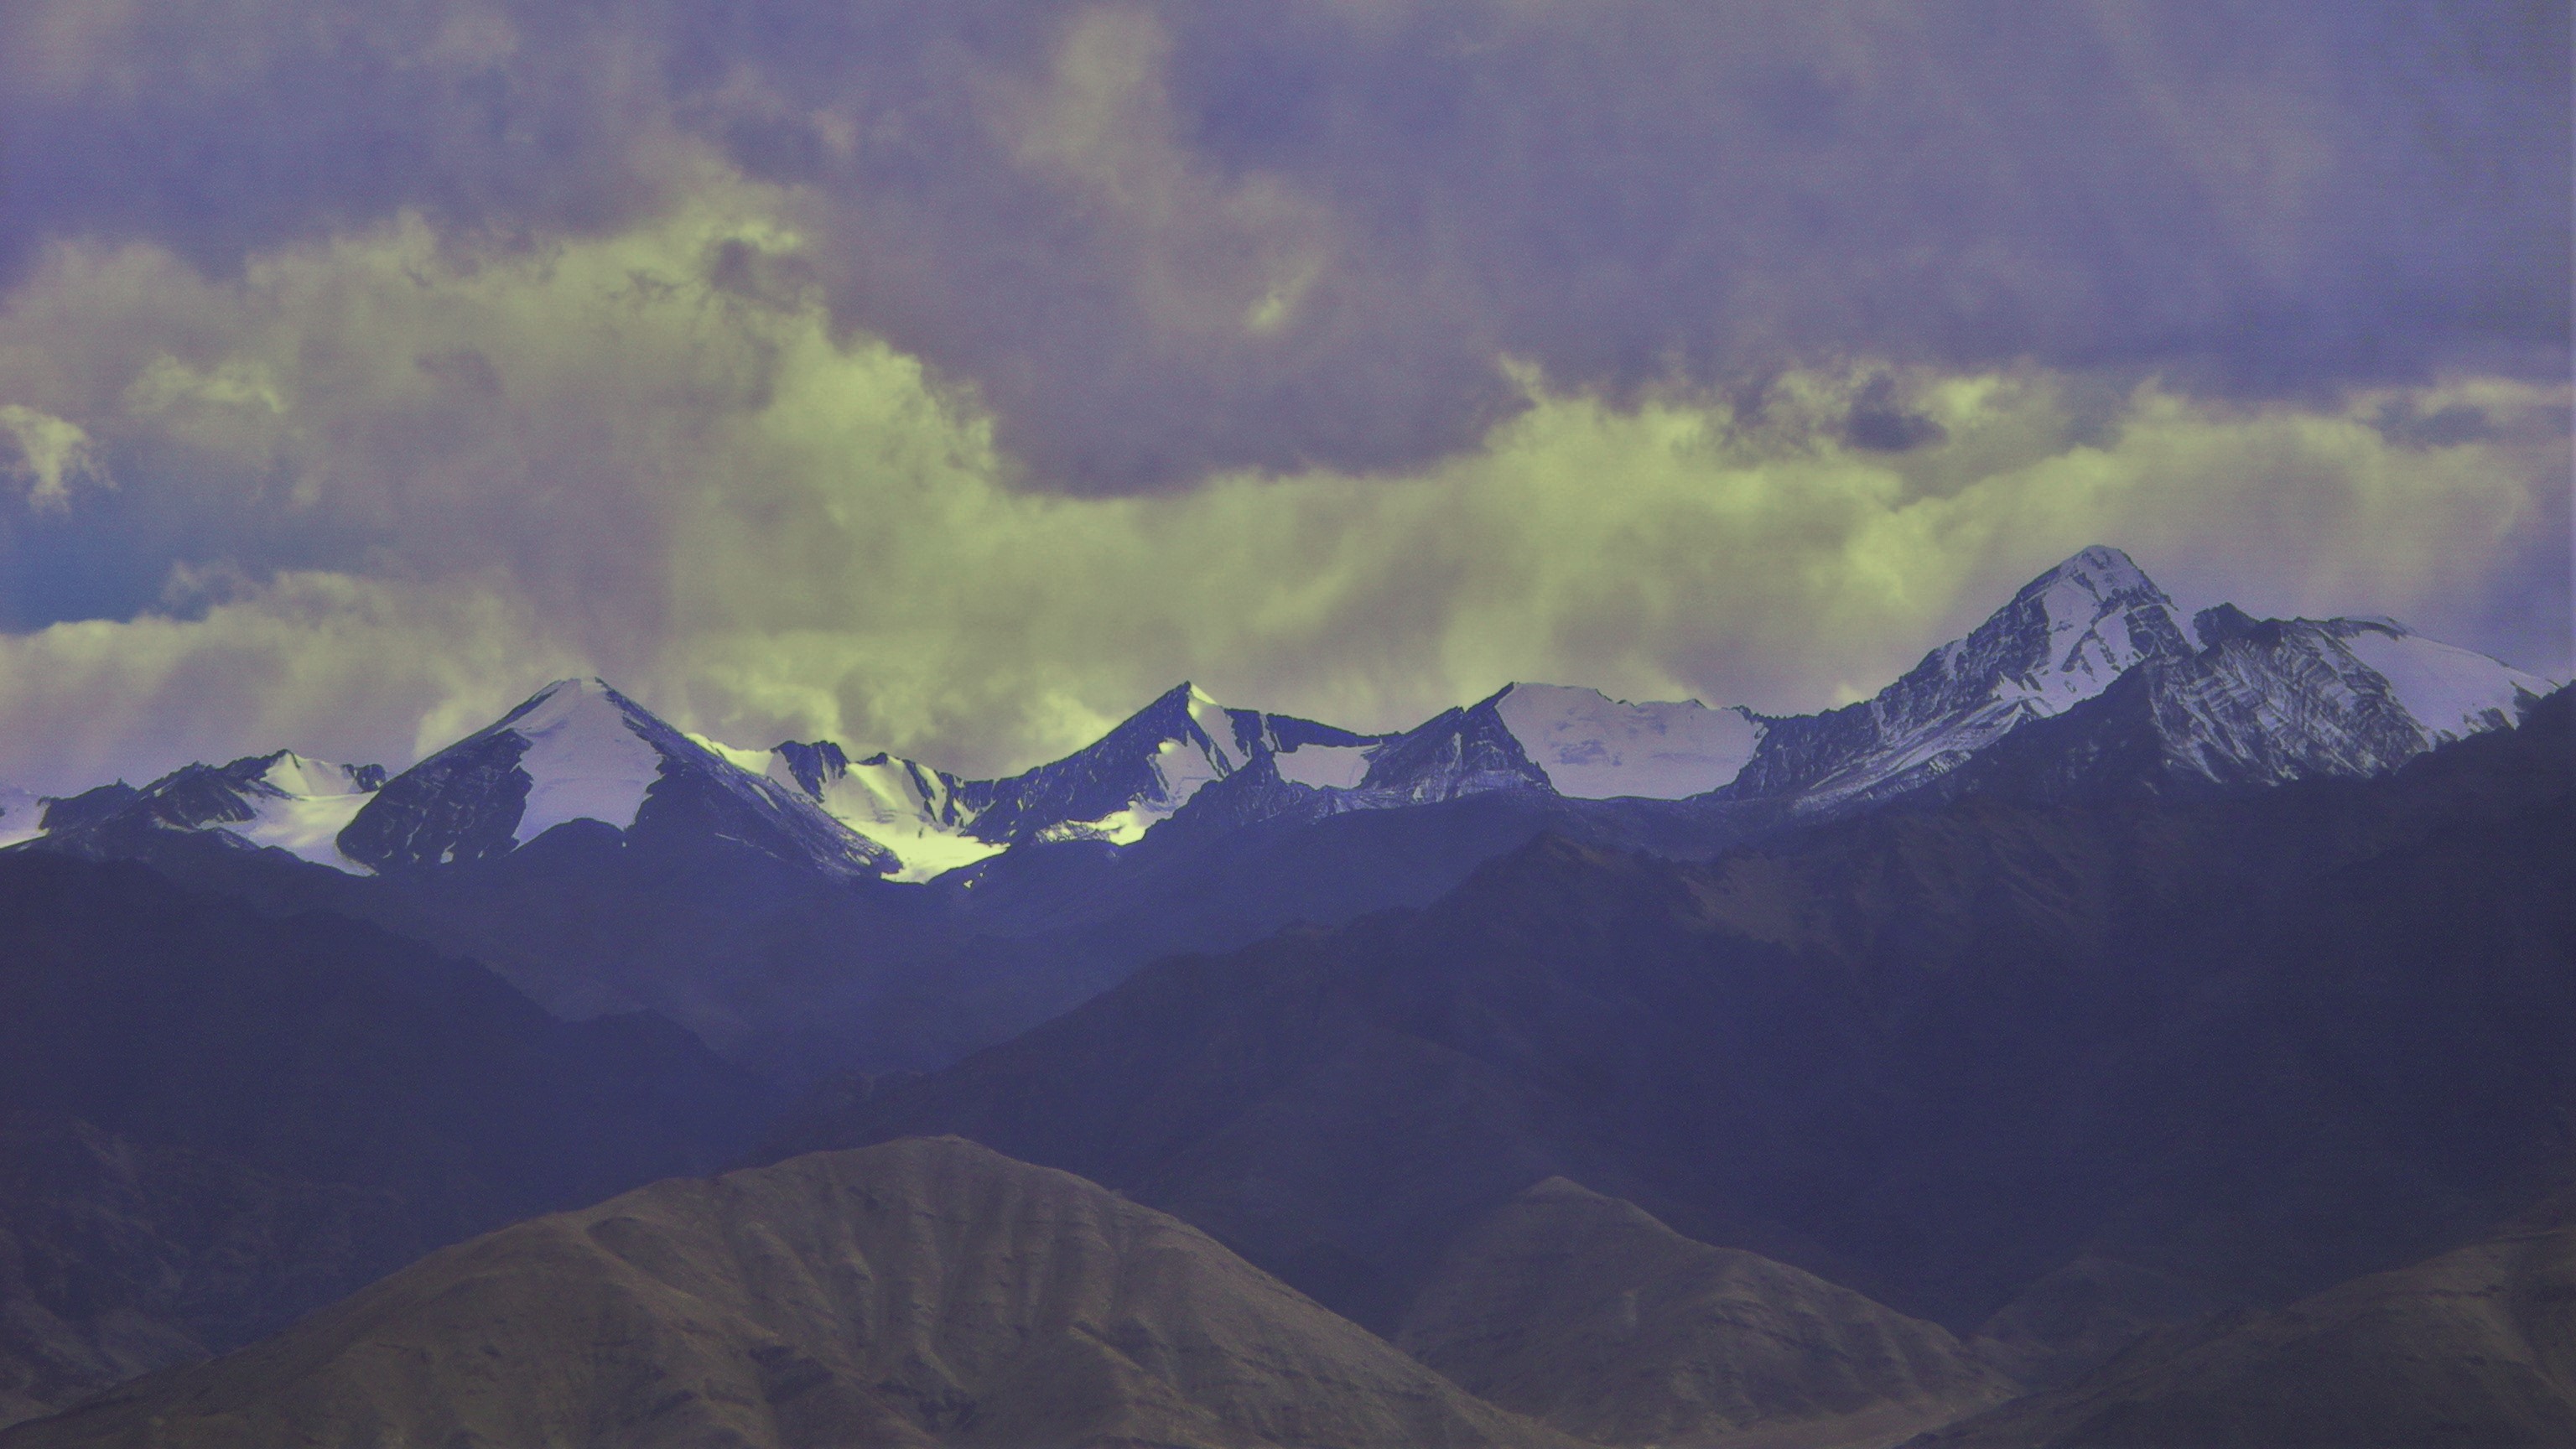 Stok Kangri Ladakh